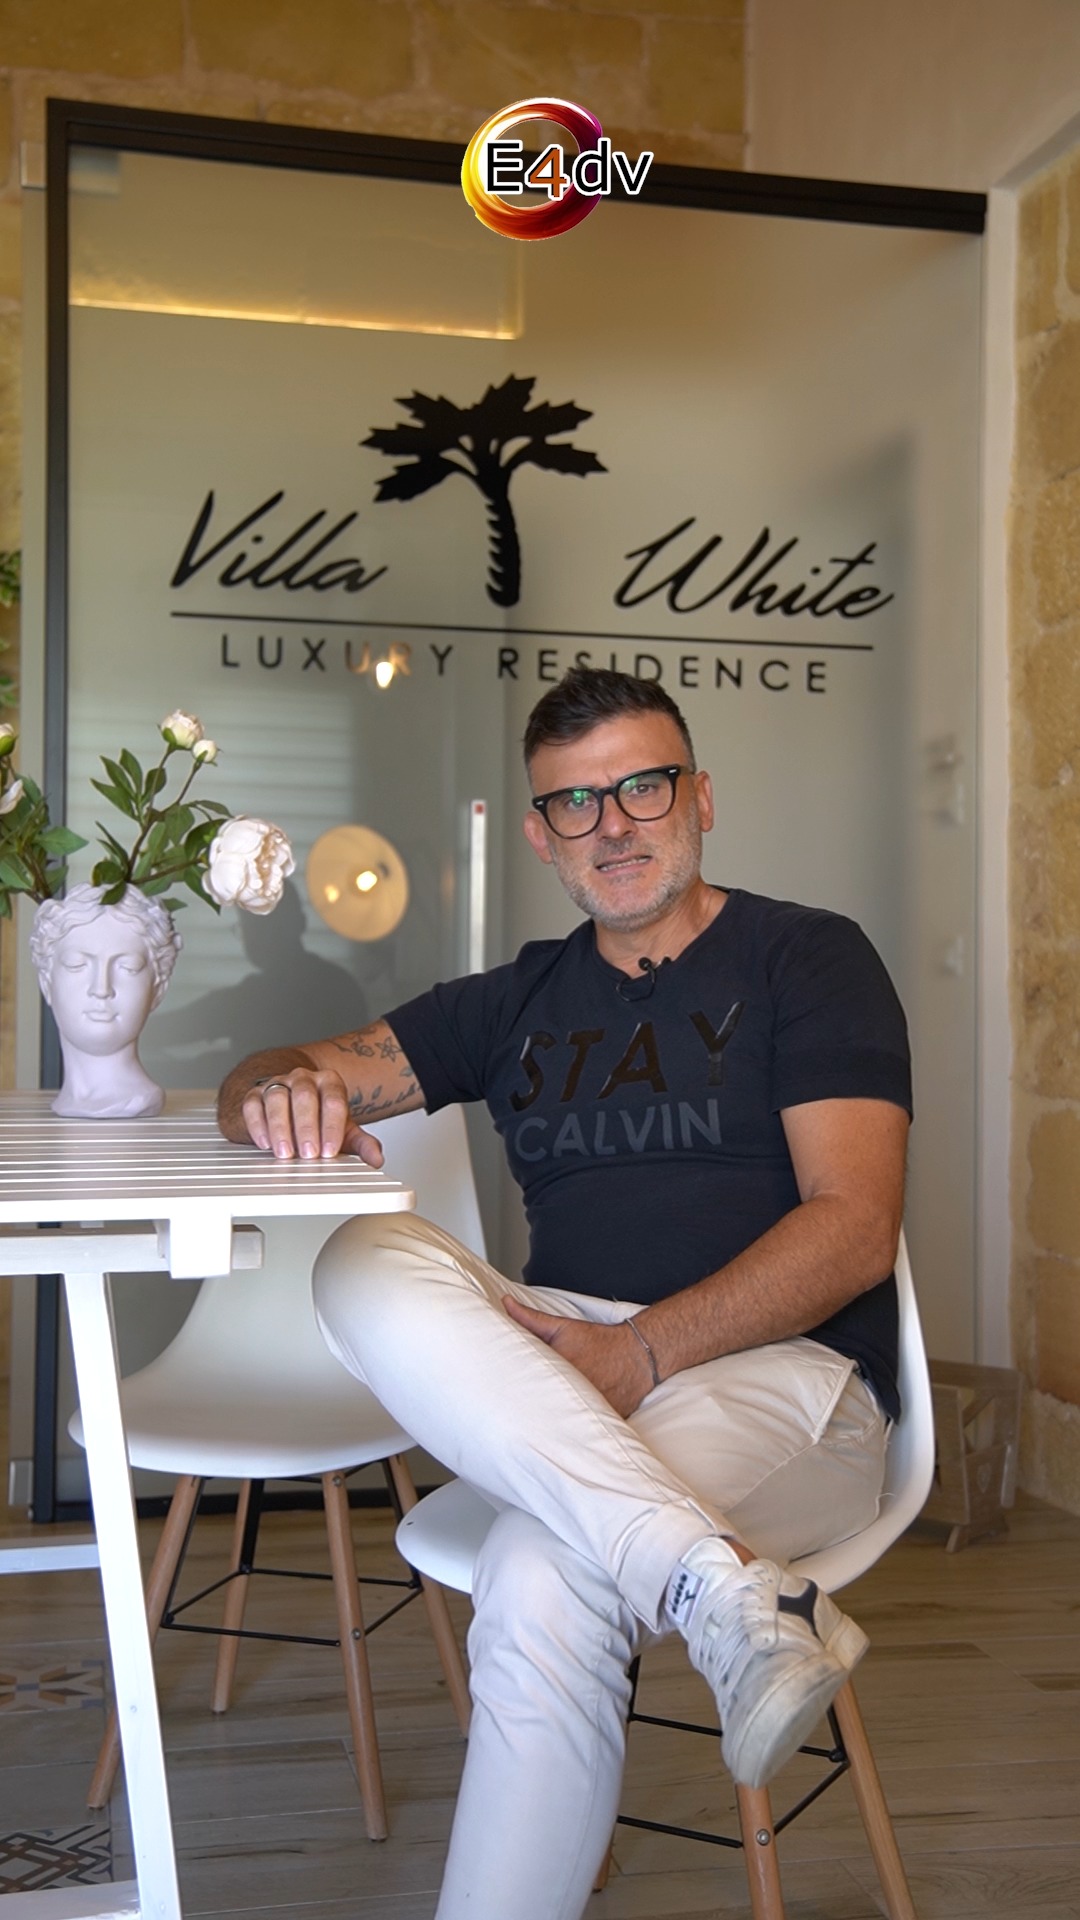 Villa White Luxury Residence 🏡

Piero Meo, uno dei proprietari di